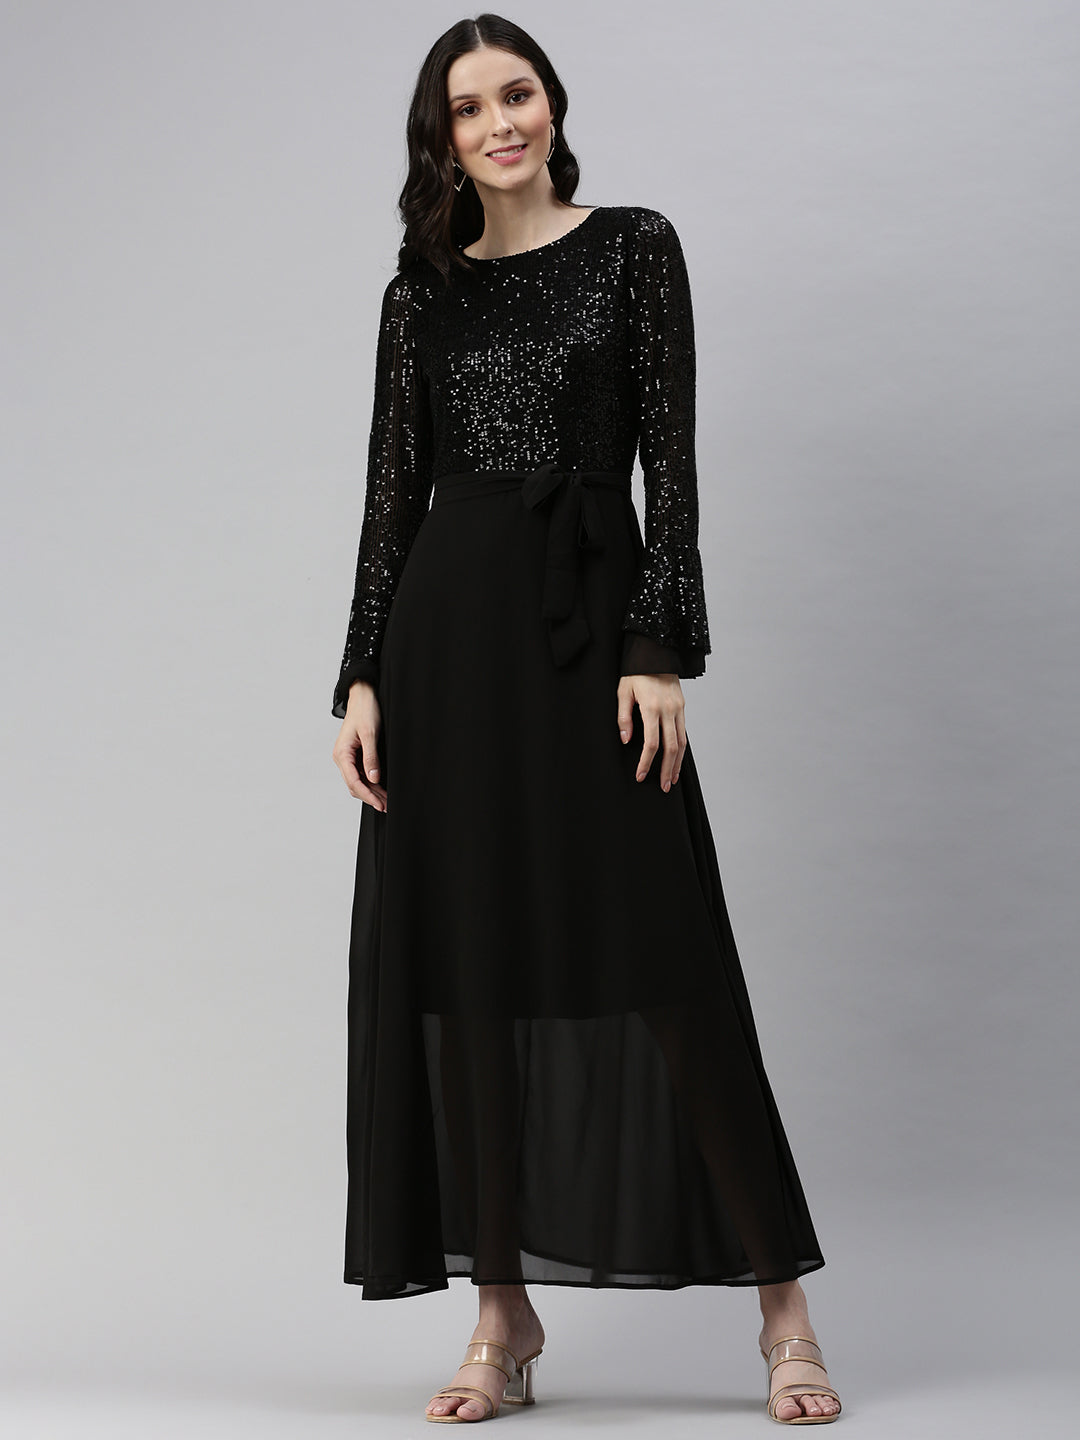 Women's Embellished Black Dress